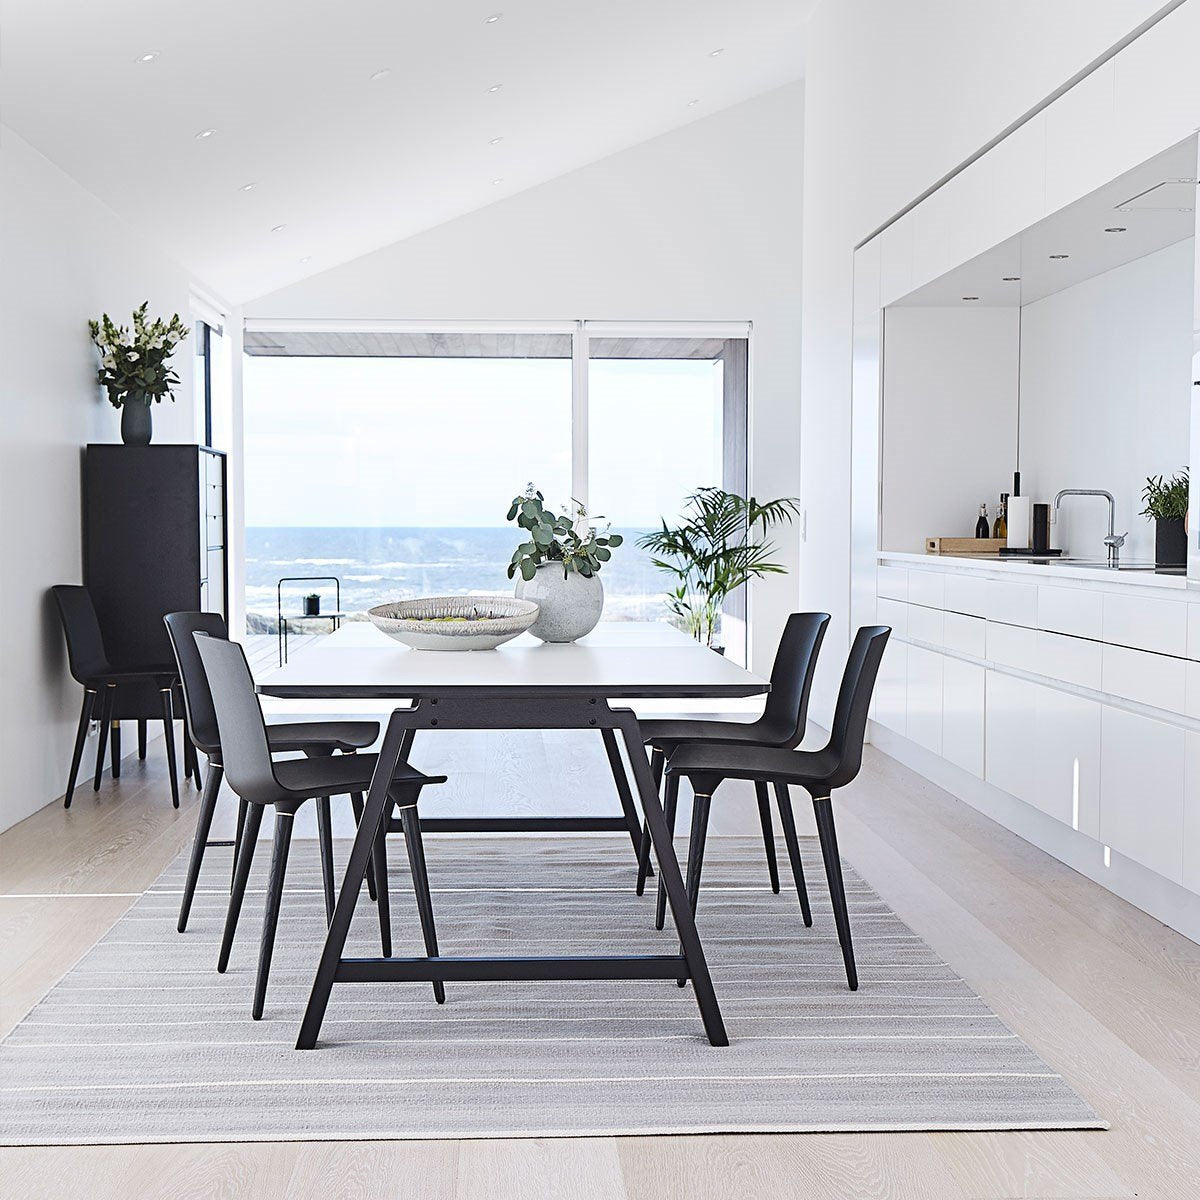 Annersen Furniture T1 Extension Plaque, stratifié blanc, 50x95cm